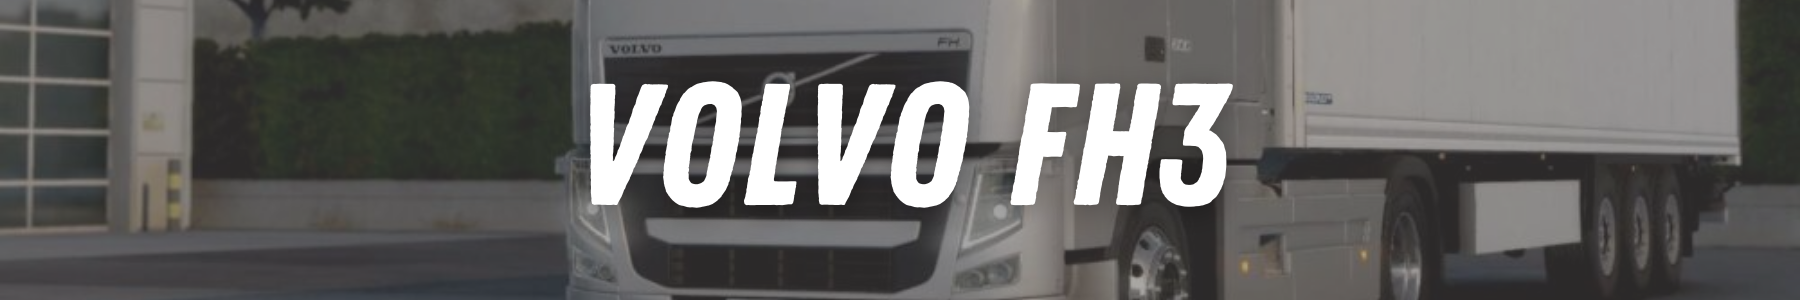 22H22 - Accessoires tuning pour votre poids lourd Volvo FH3